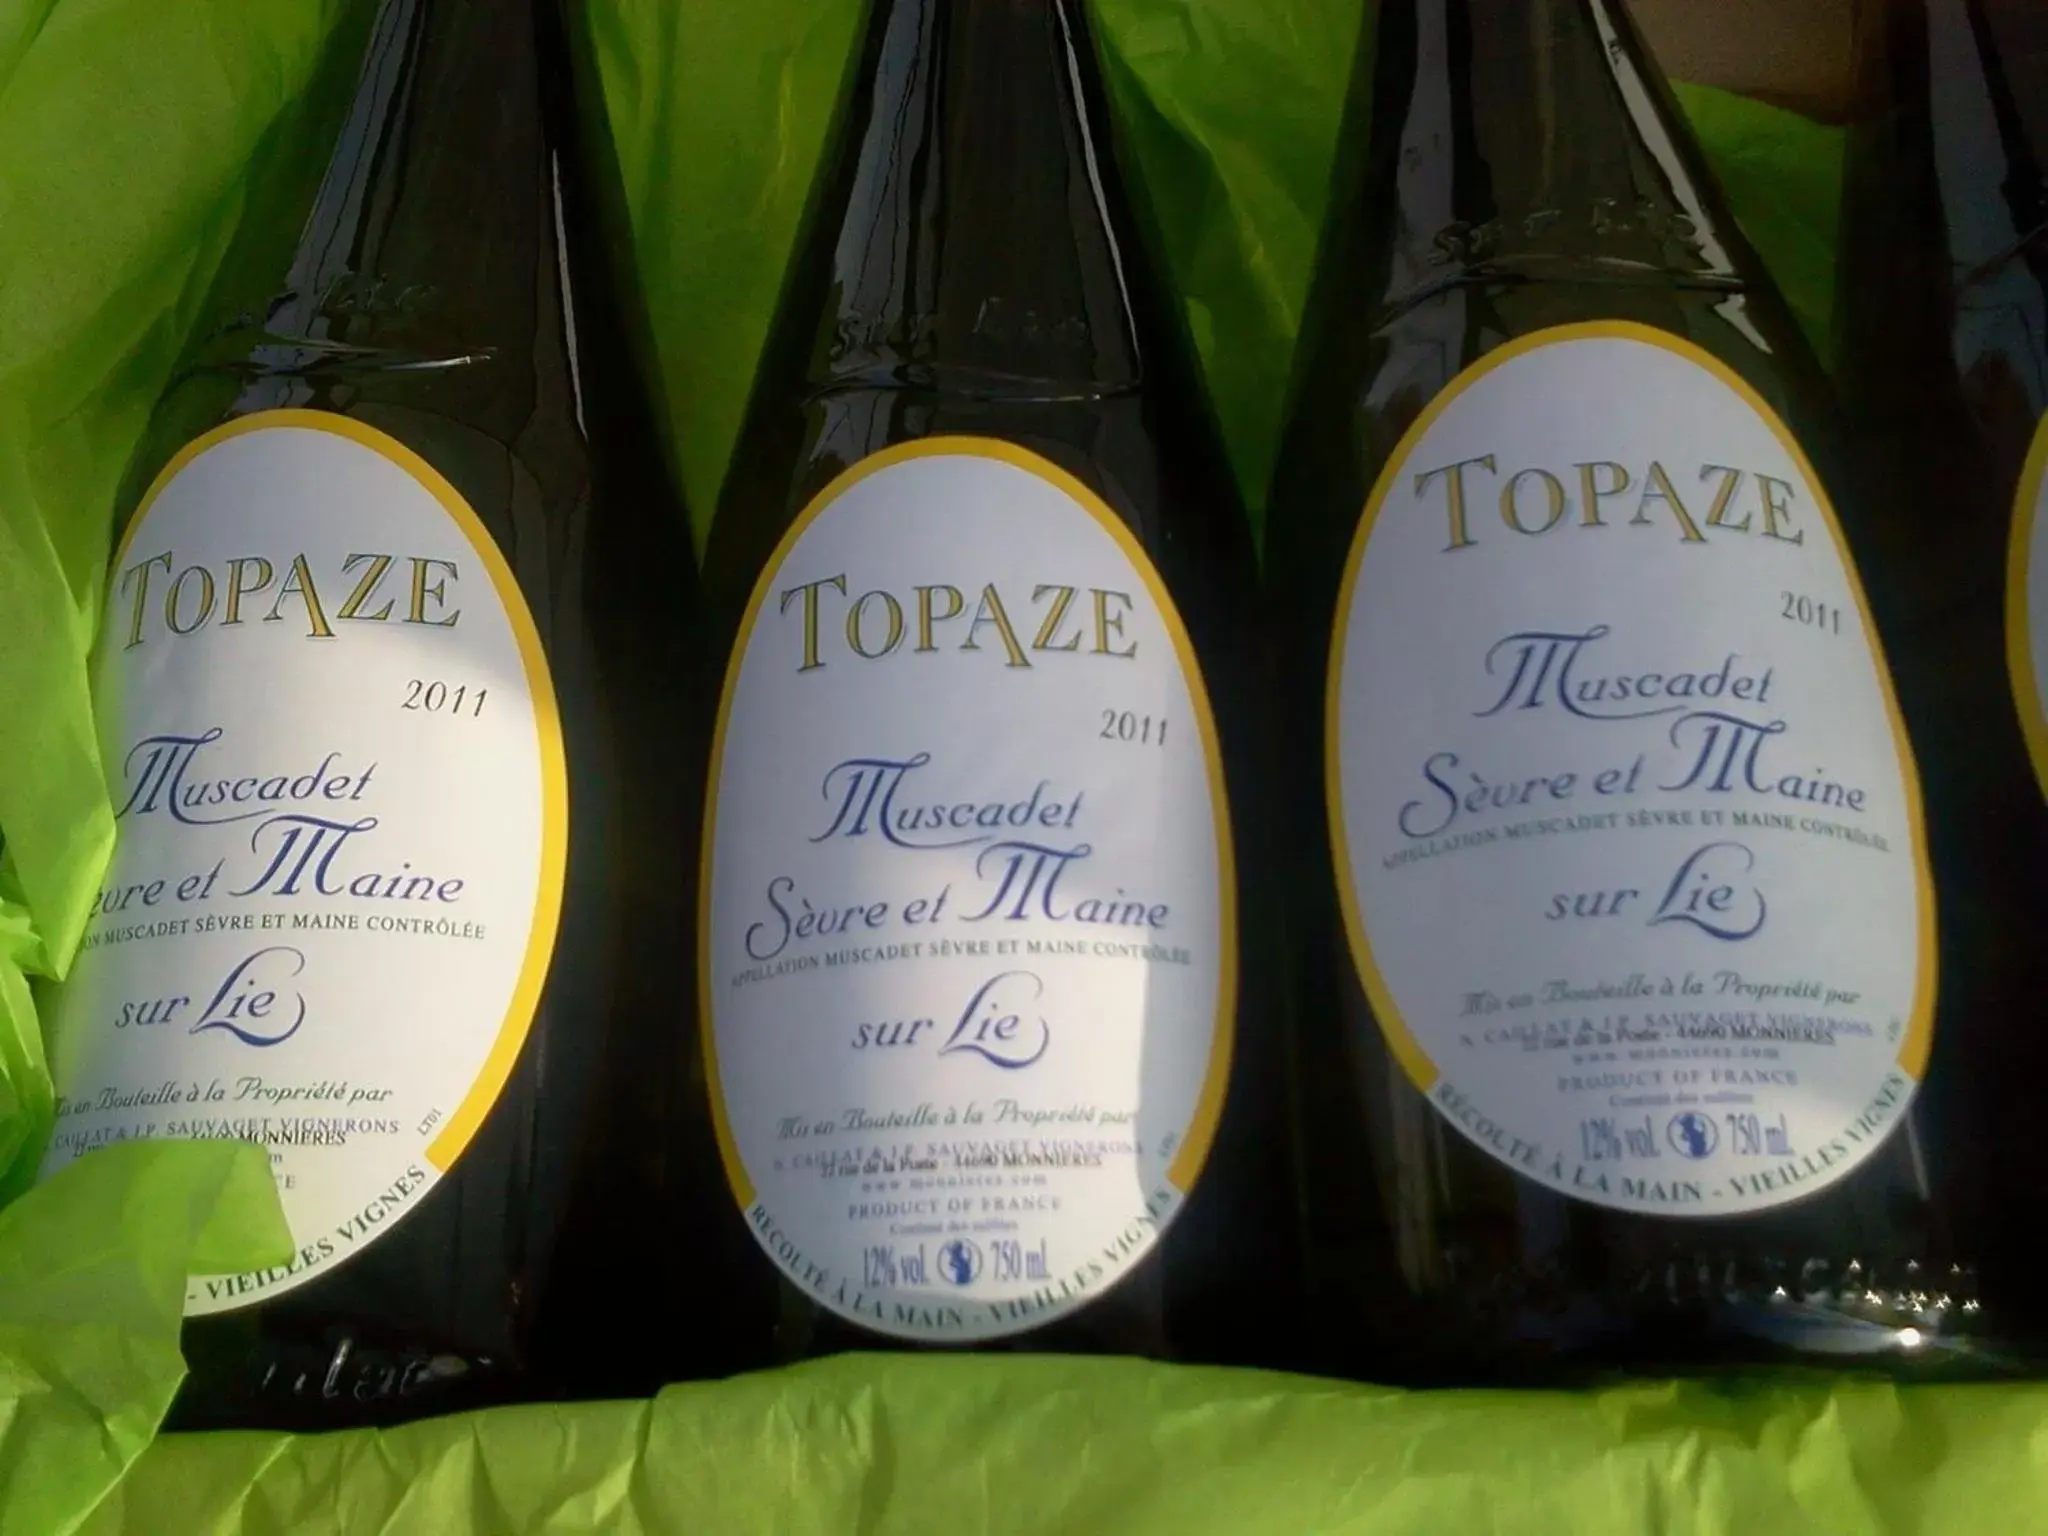 Drinks in Topaze